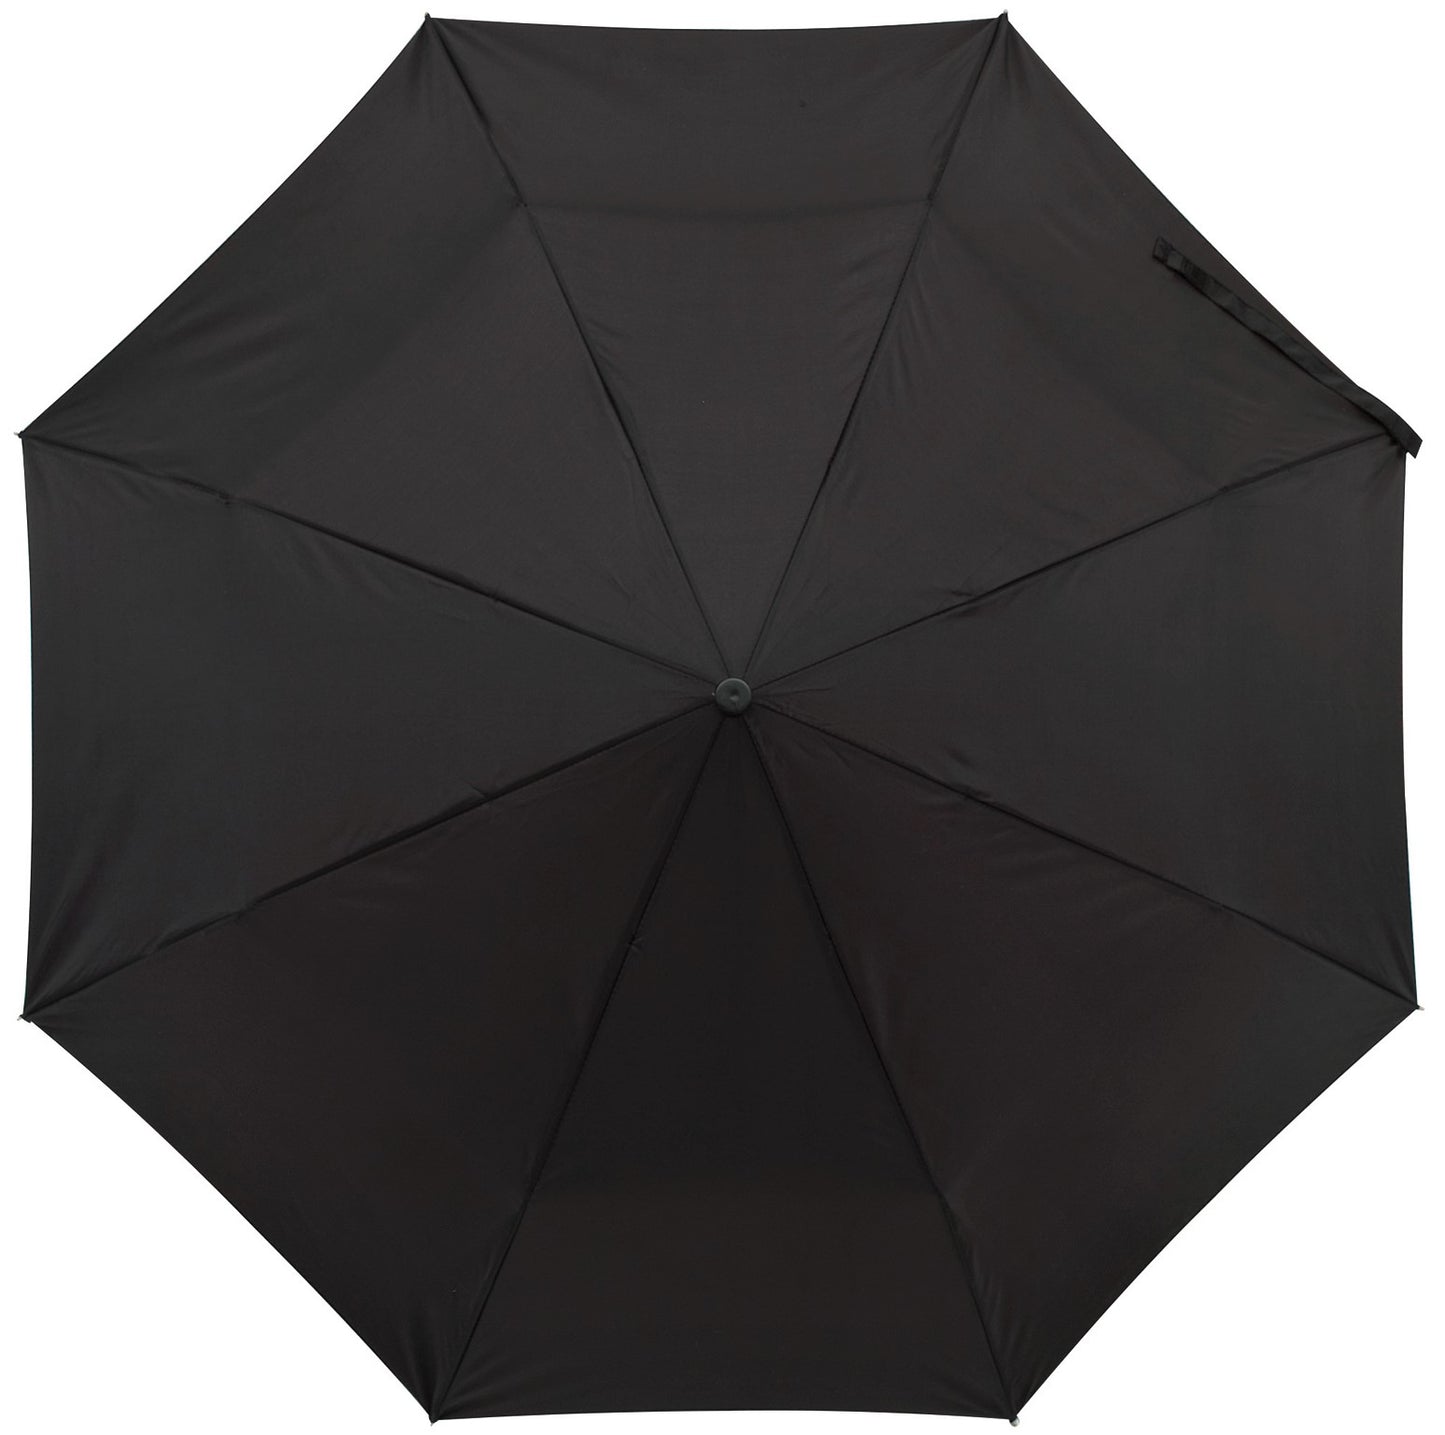 Μαύρη, Ομπρέλα Βροχής Αυτόματη μίνι. (κωδικός 01-01-0202)